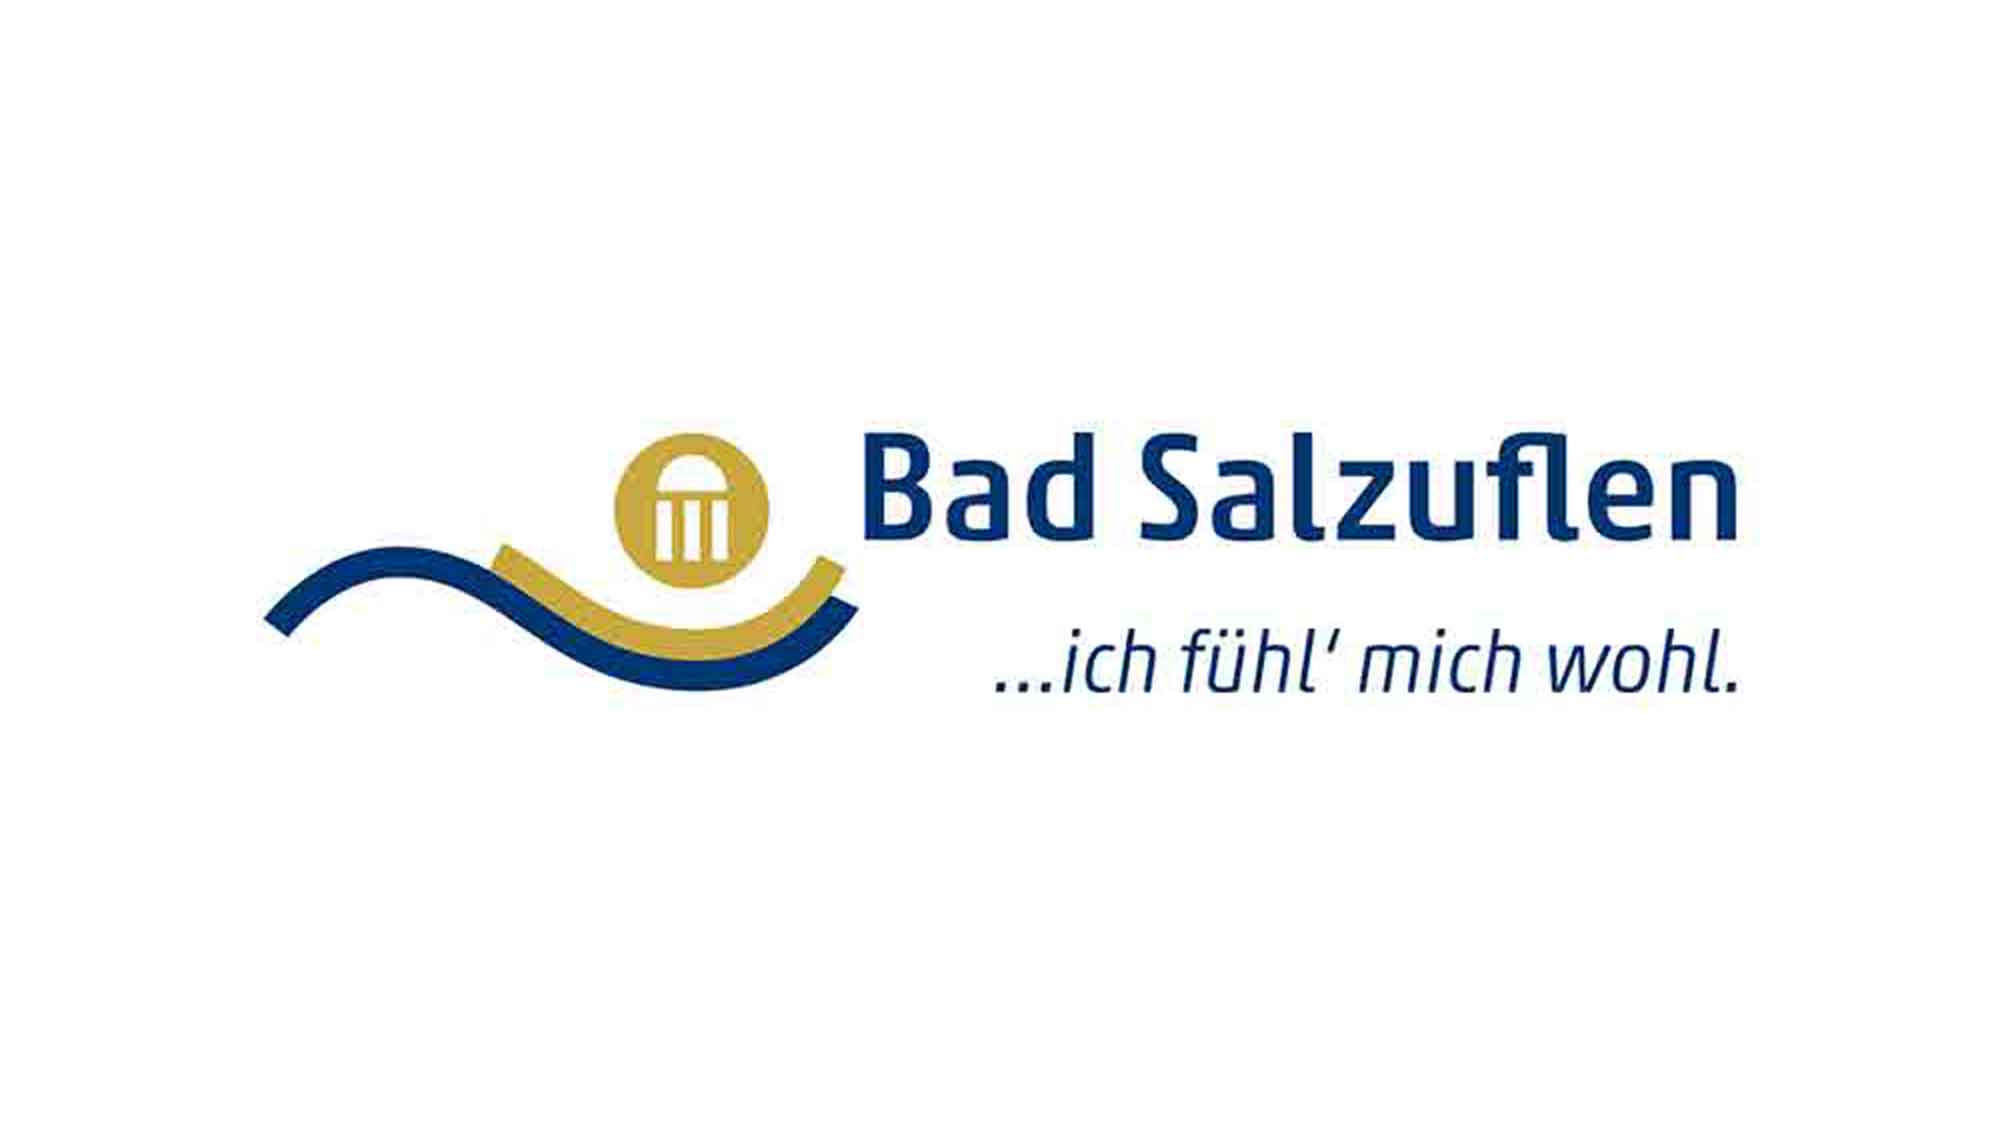 Bürgerservice der Stadt Bad Salzuflen: Vor der Ferienzeit die Gültigkeit von Ausweisdokumenten prüfen